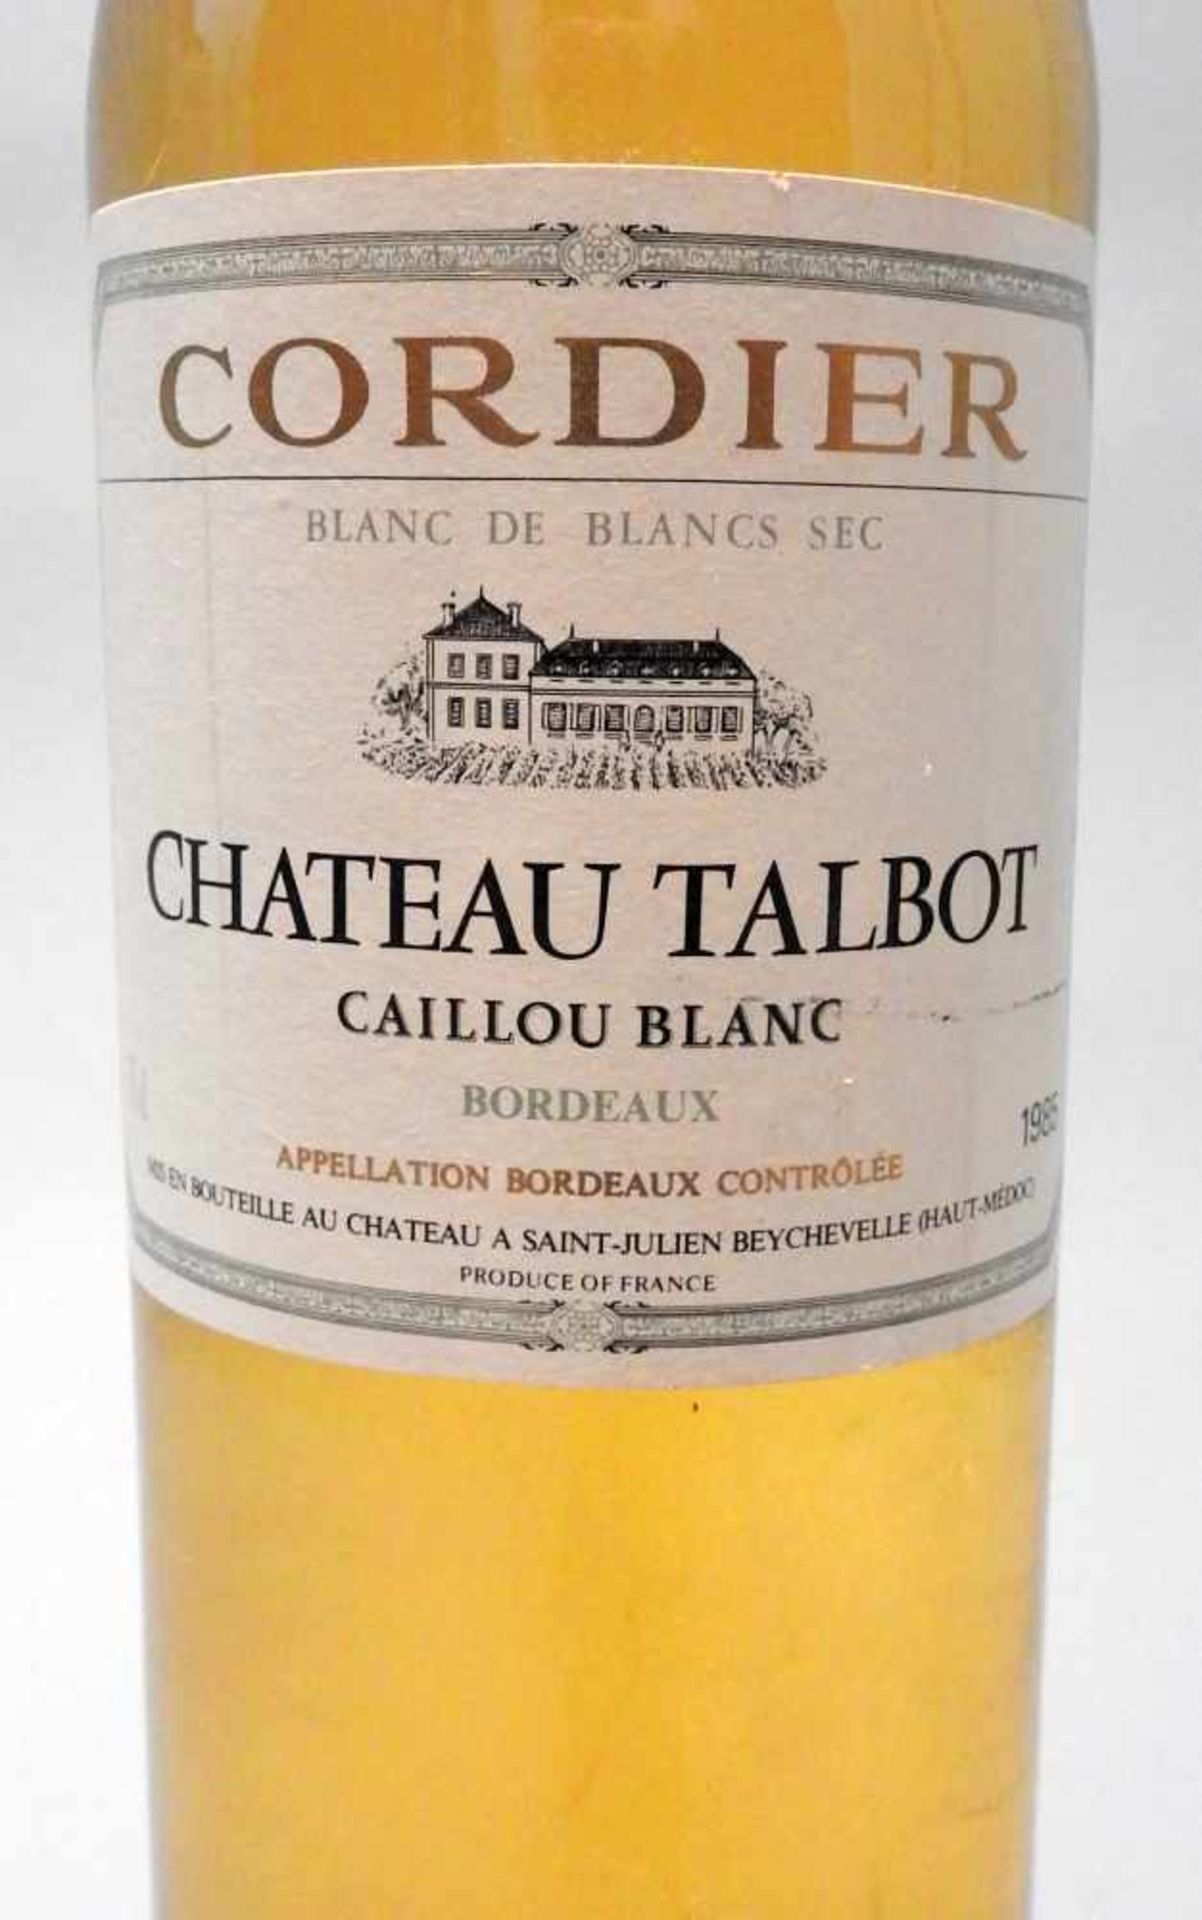 Caillou BlancChâteau Talbot Cordier, Blanc de Blancs sec. Jahrgang 1985, Inhalt 750 m - Bild 2 aus 2